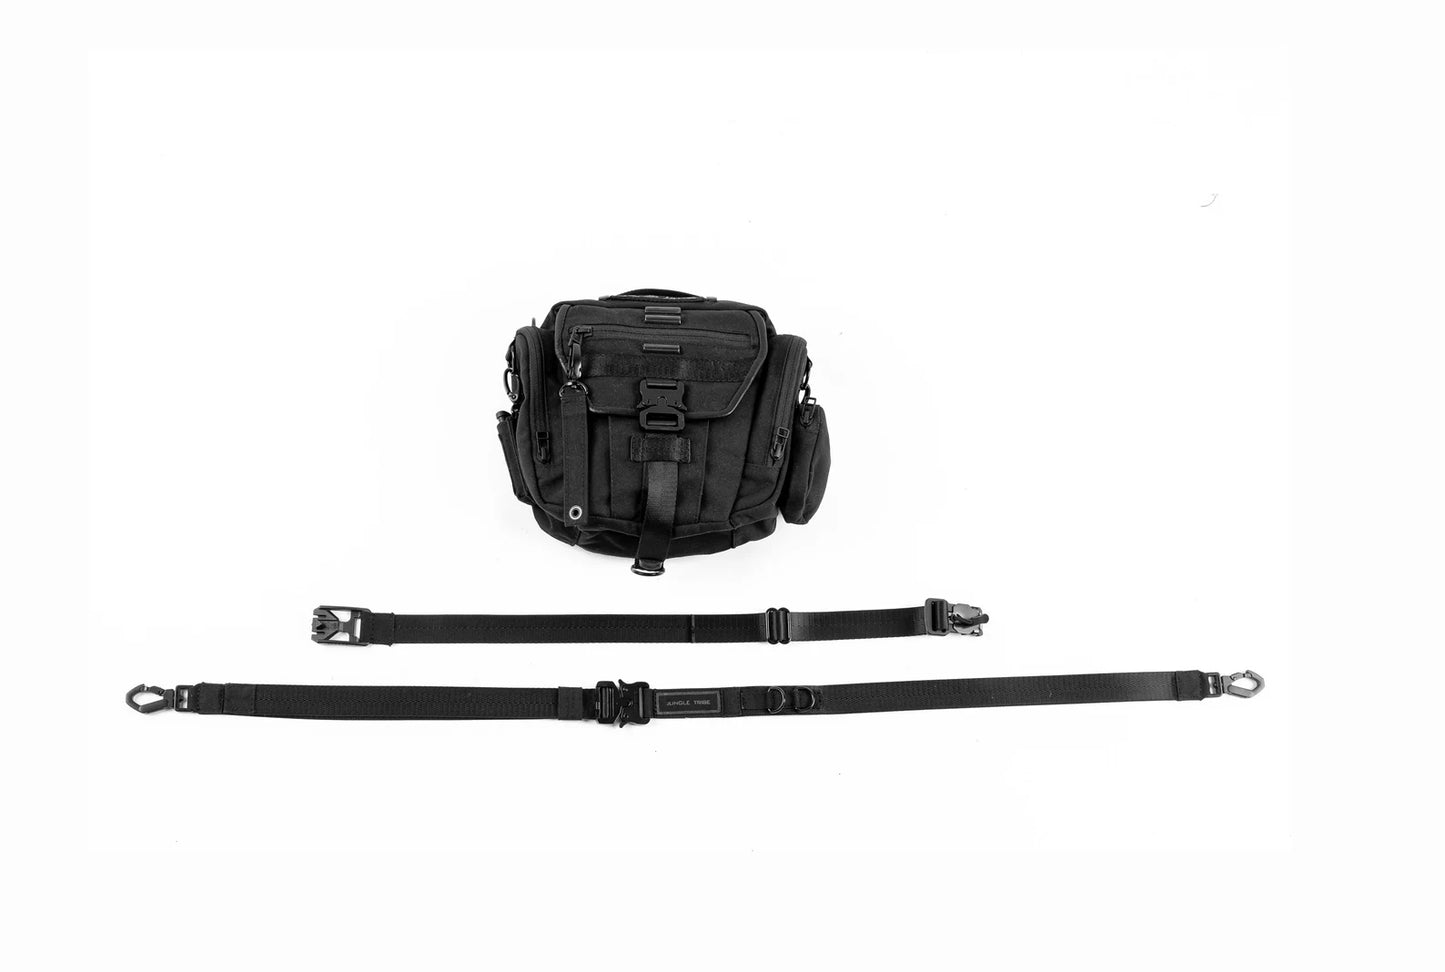 Tech2 Crossbody Bag and Tactical Leg Holster